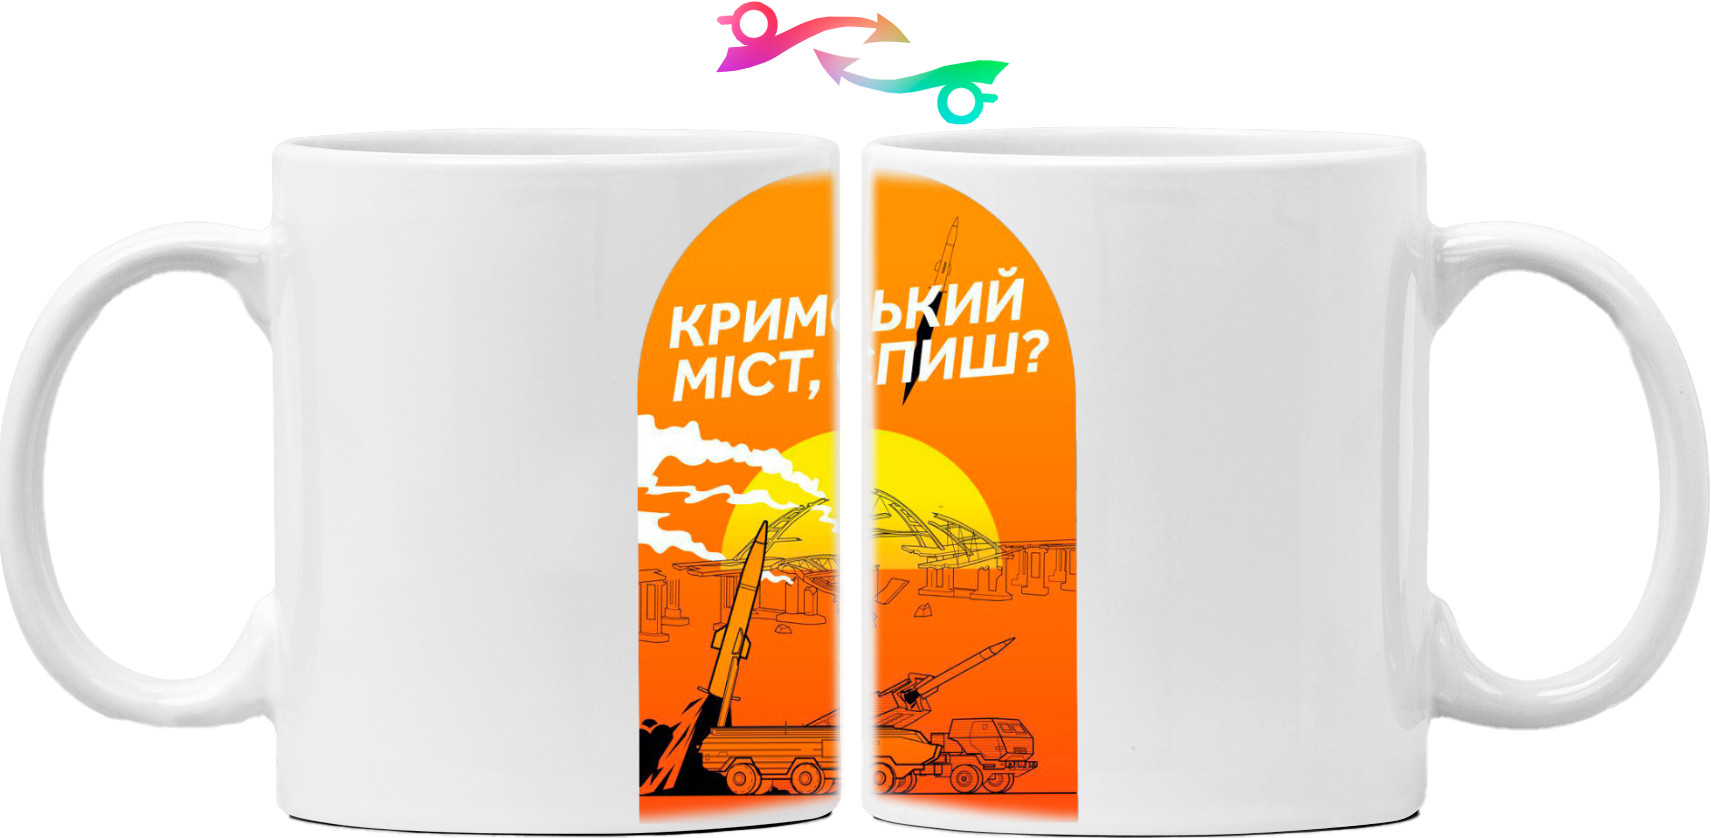 Я УКРАИНЕЦ - Mug - Crimean city, are you sleeping? - Mfest